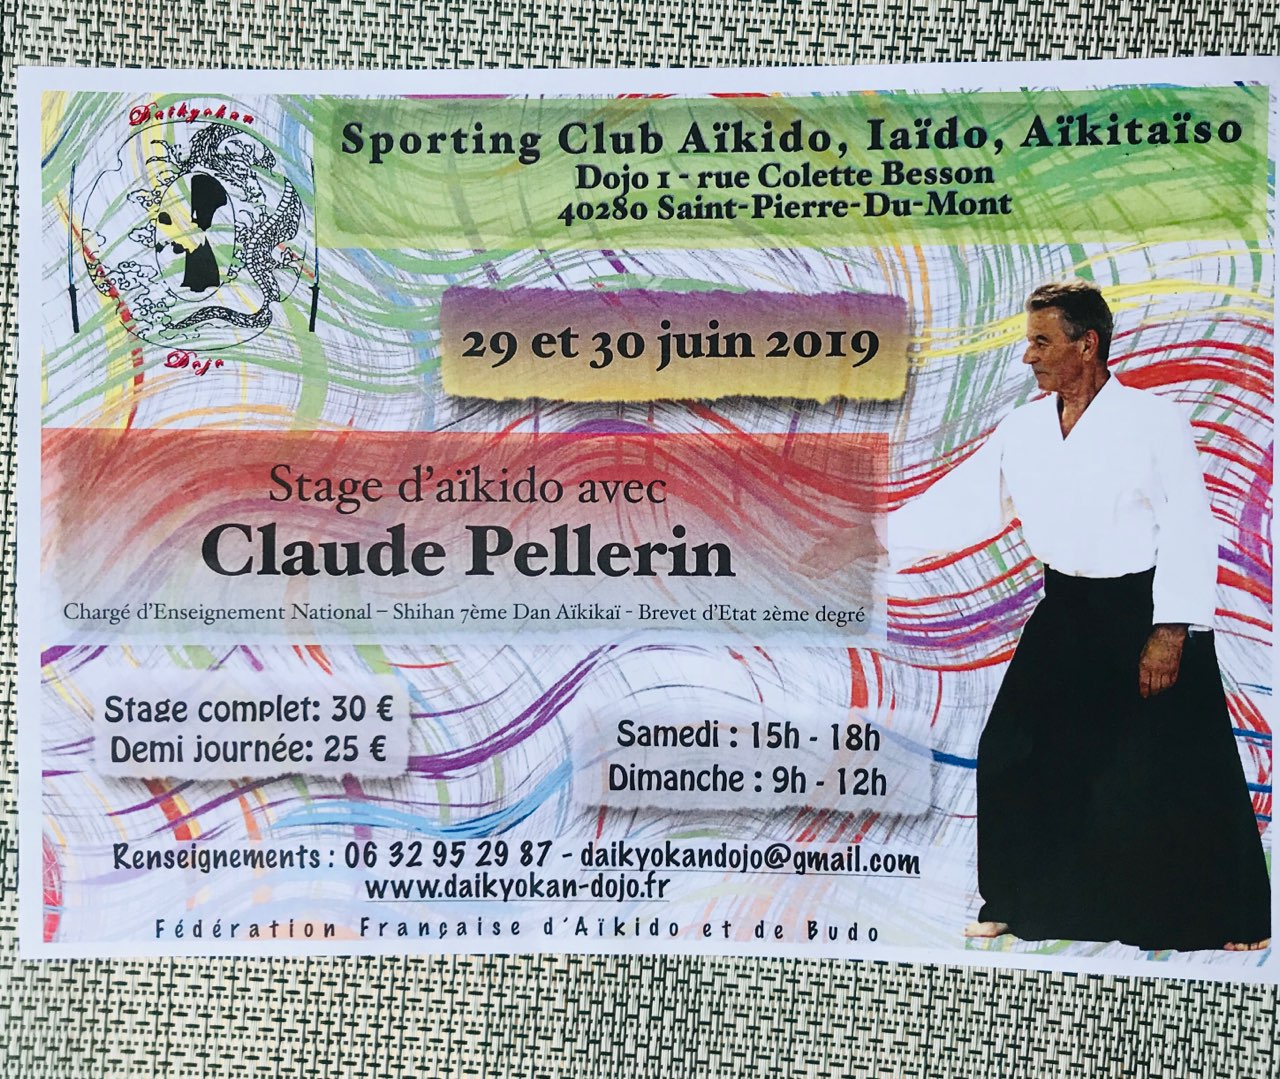 29 et 30 Juin 2019 - Stage d'Aïkido à Saint-Pierre-du-Mont animé par Claude Pellerin Shihan 7ème Dan - CEN